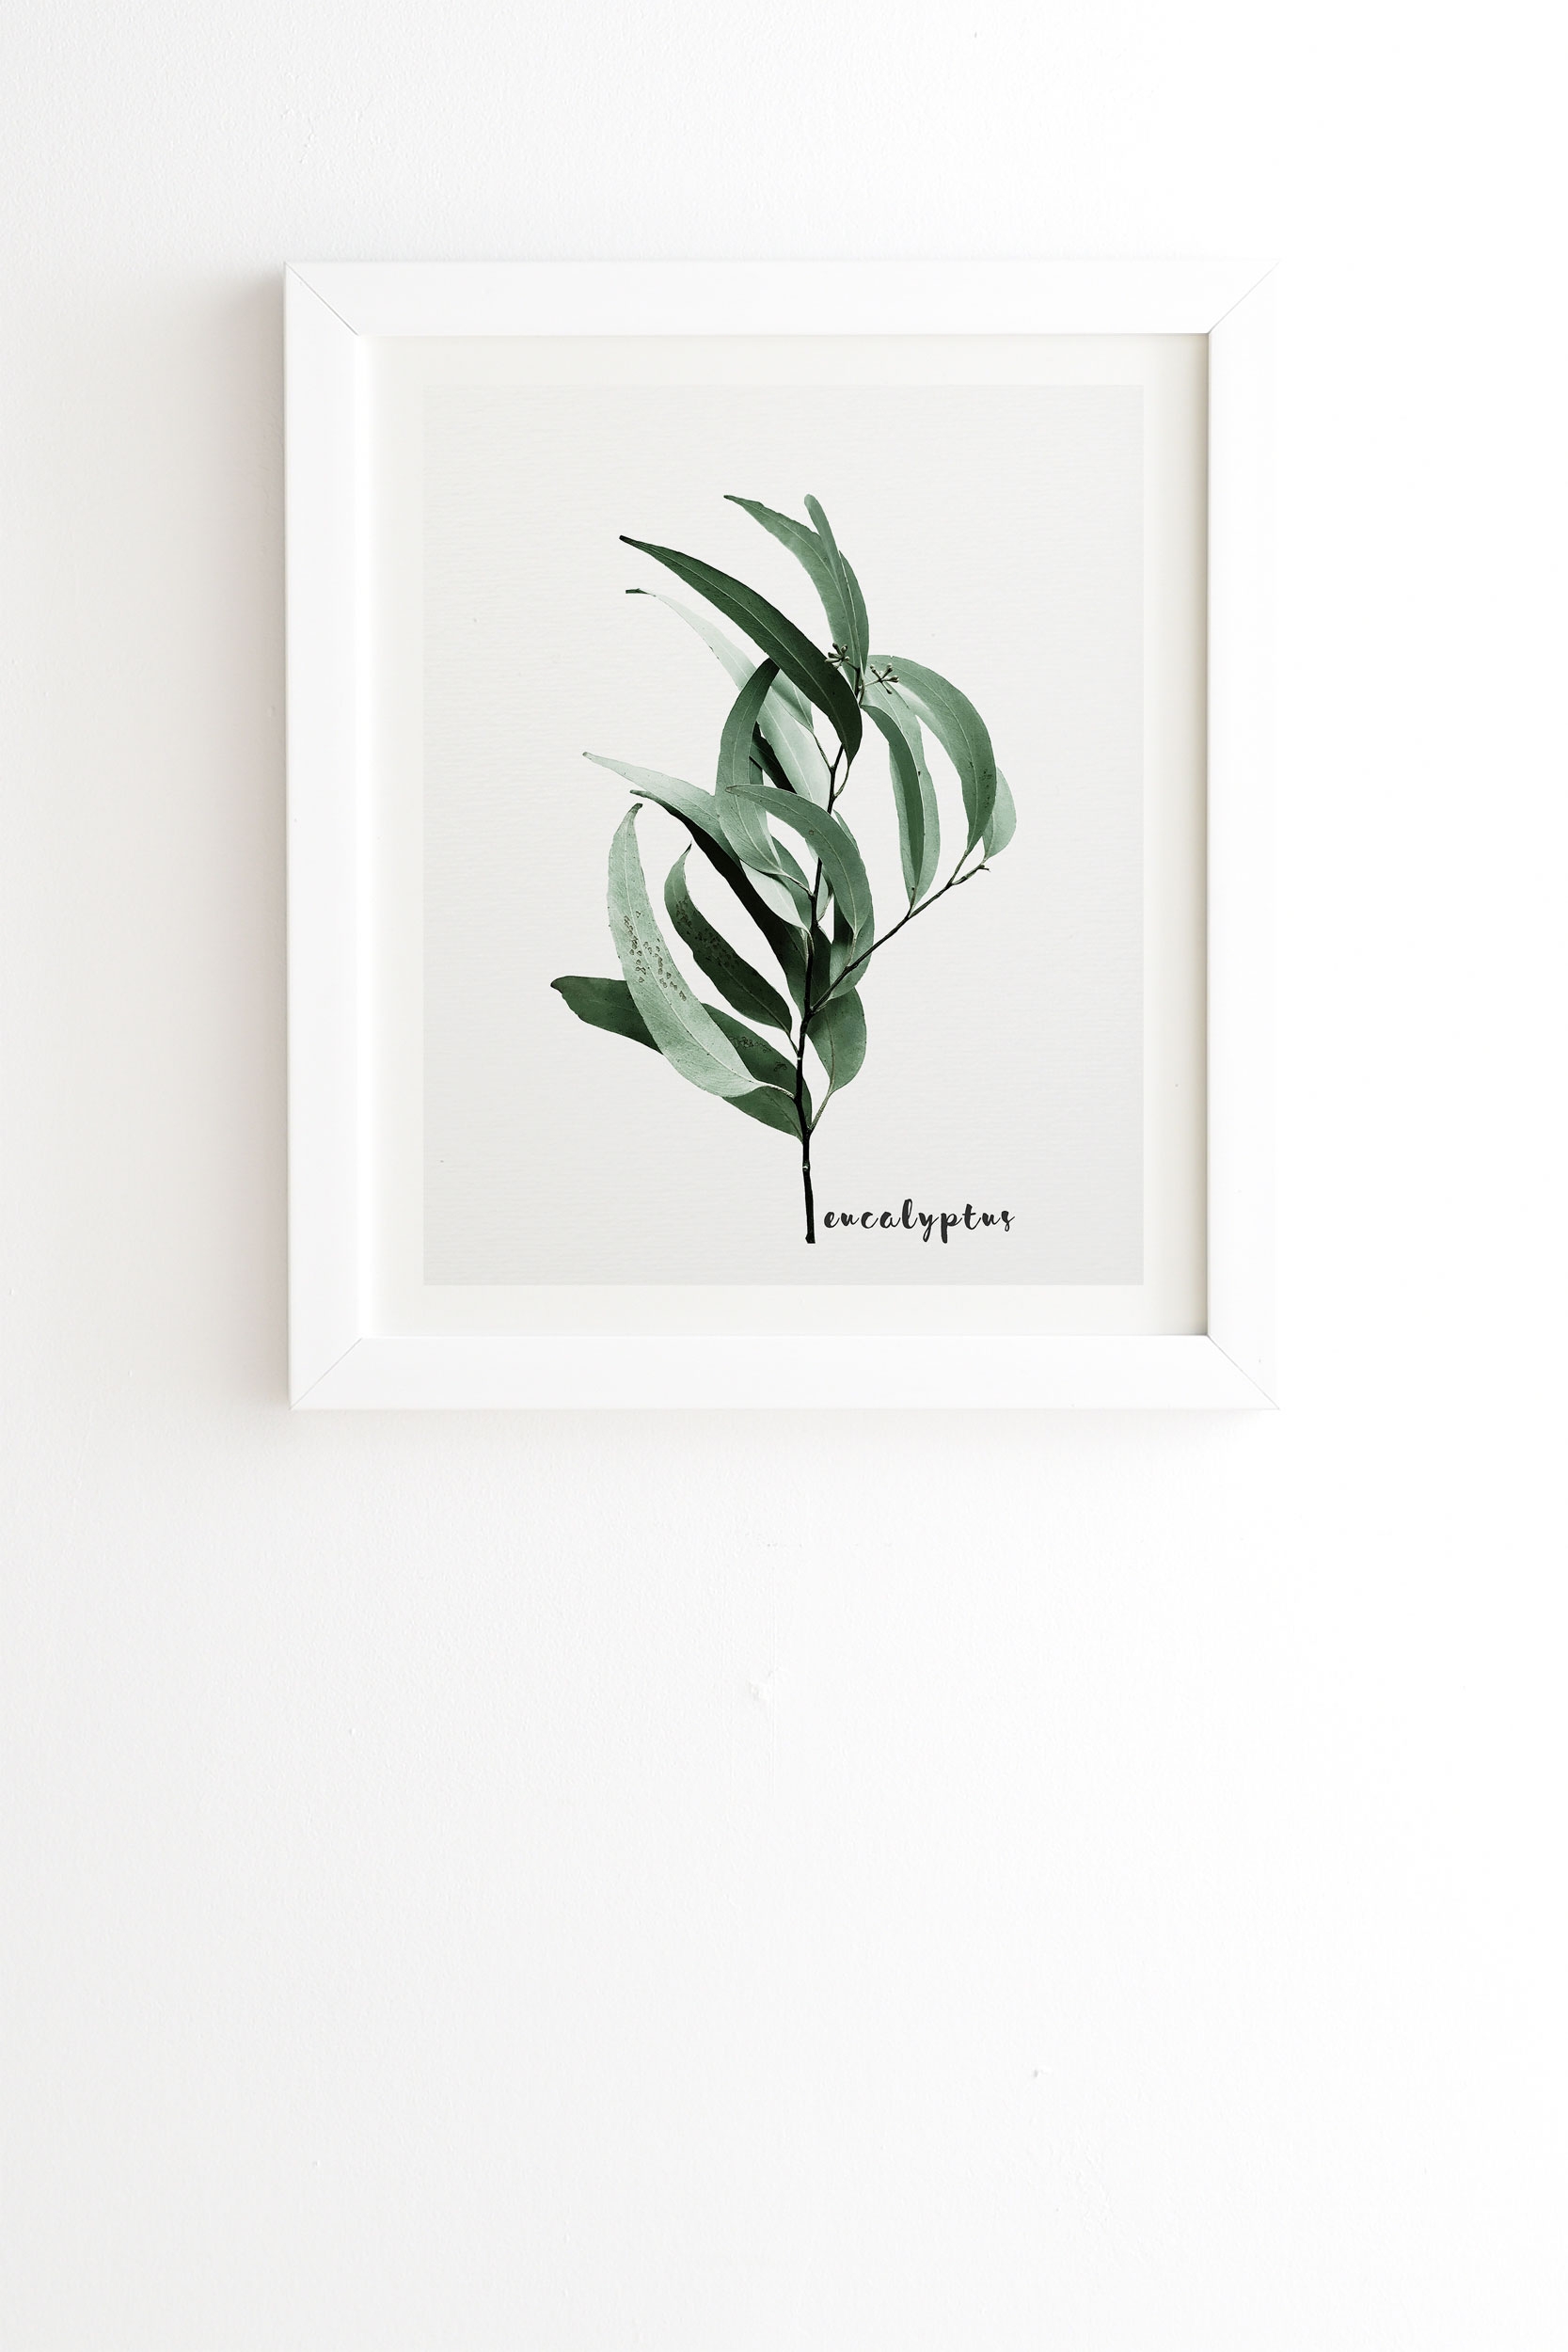 Eucalyptus Australian Gum Tree by Gale Switzer - Framed Wall Art Basic White 20" x 20" - Image 0